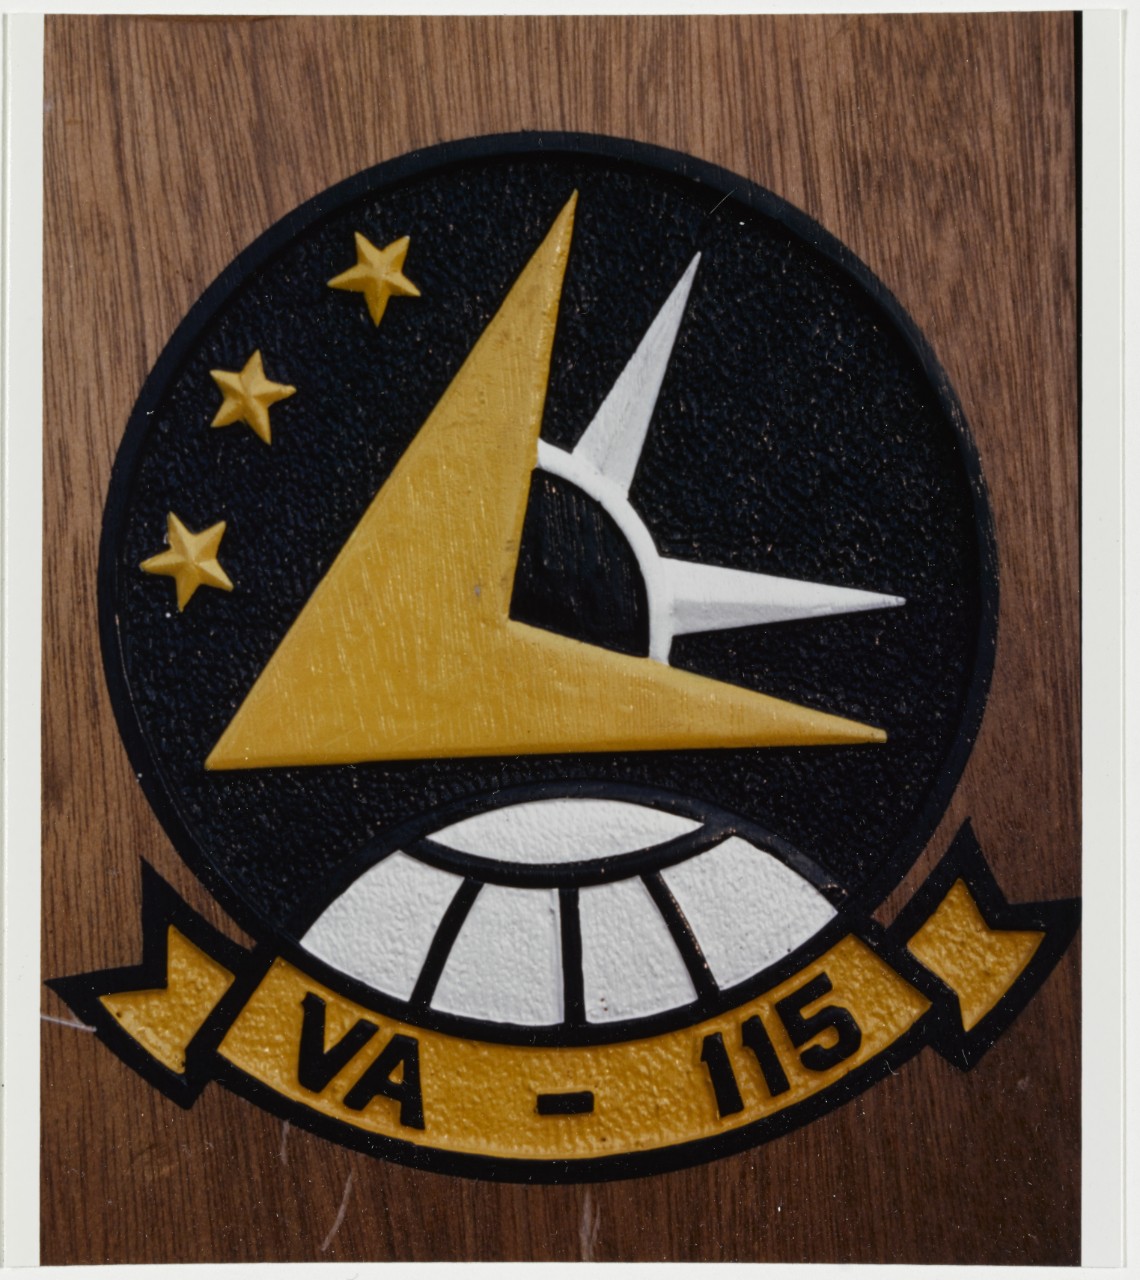 Insignia: Attack Squadron 115 (VA-115)